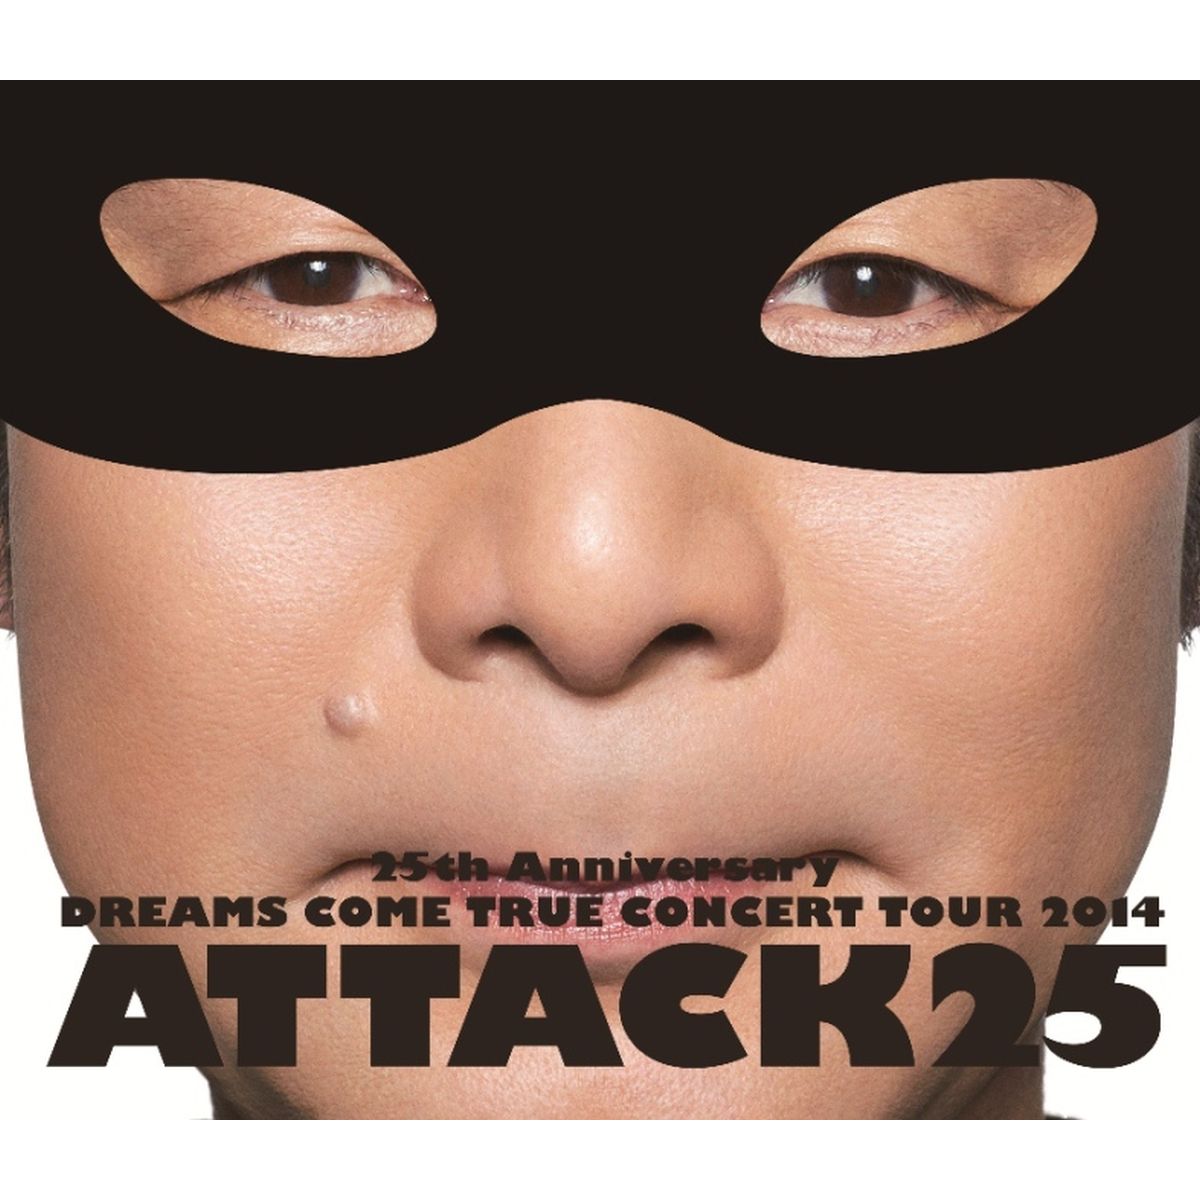 25th ANNIVERSARY DREAMS COME TRUE CONCERT TOUR 2014 ATTACK25 【通常盤】【Blu-ray】画像